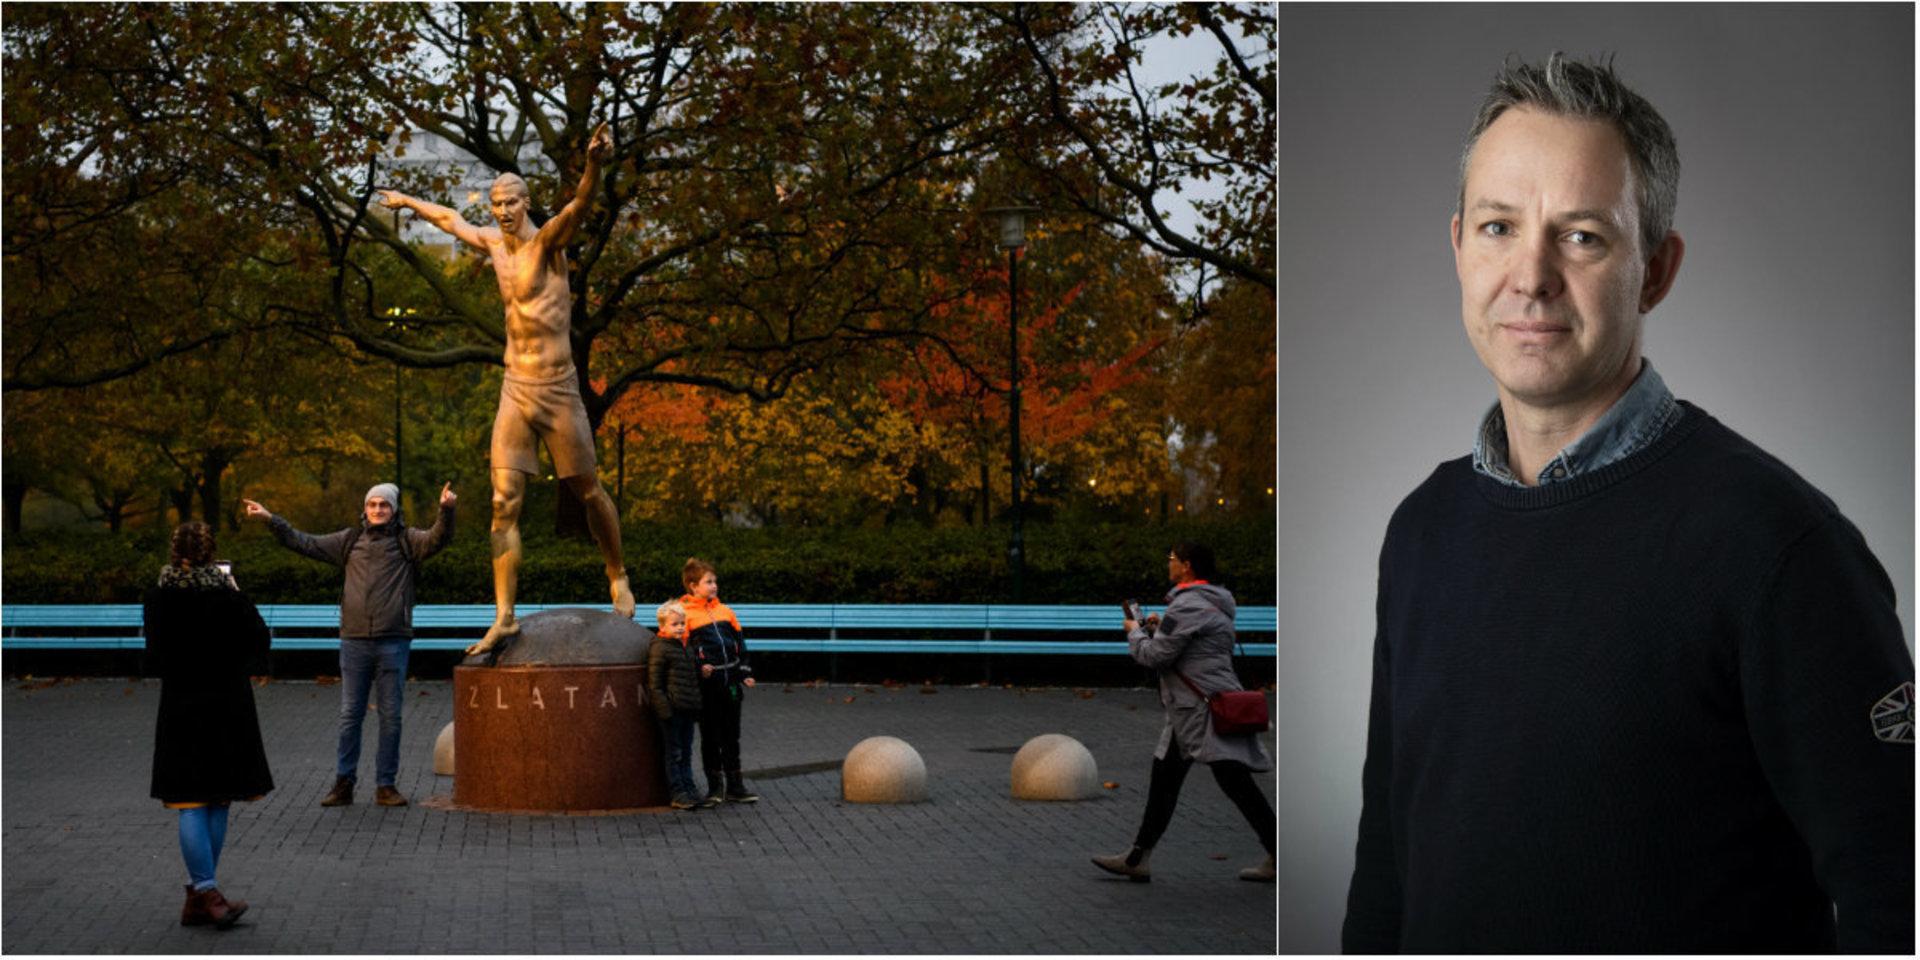 Zlatan Ibrahimovic står sedan en månad tillbaka staty i Malmö. 